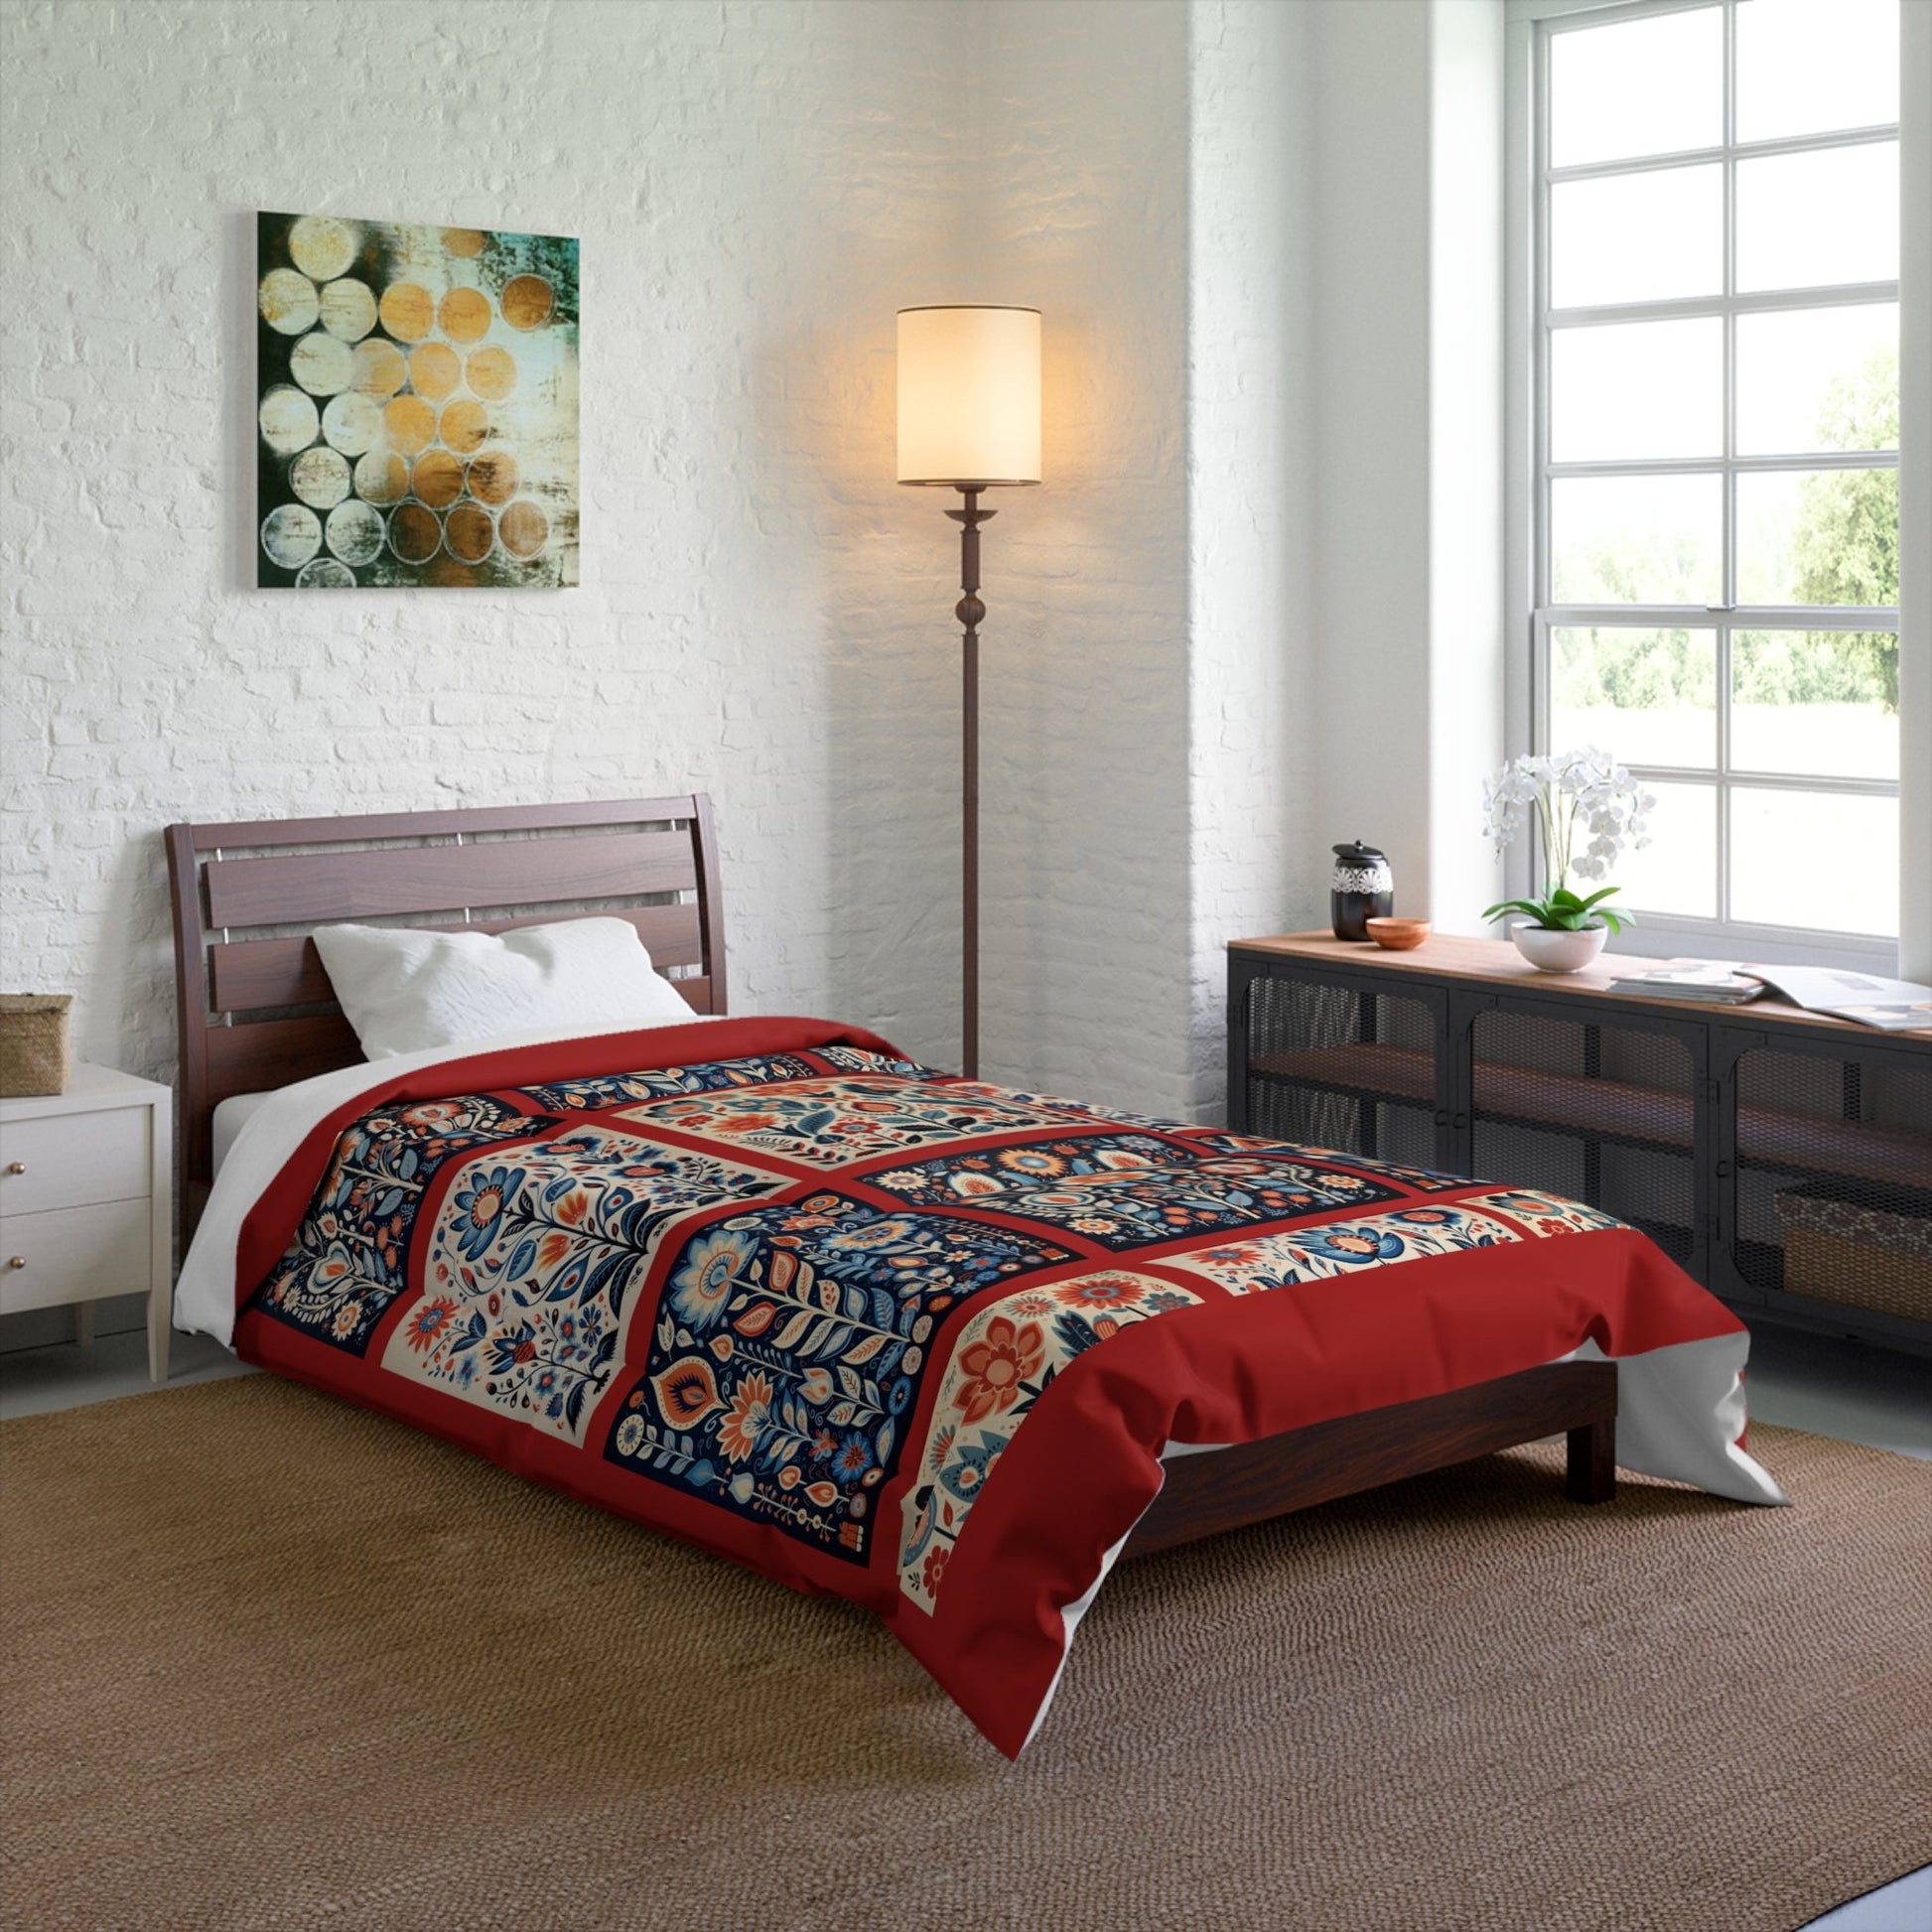 Scandinavian Folk Art King Blanket Comforter - 4 sizes - FlooredByArt